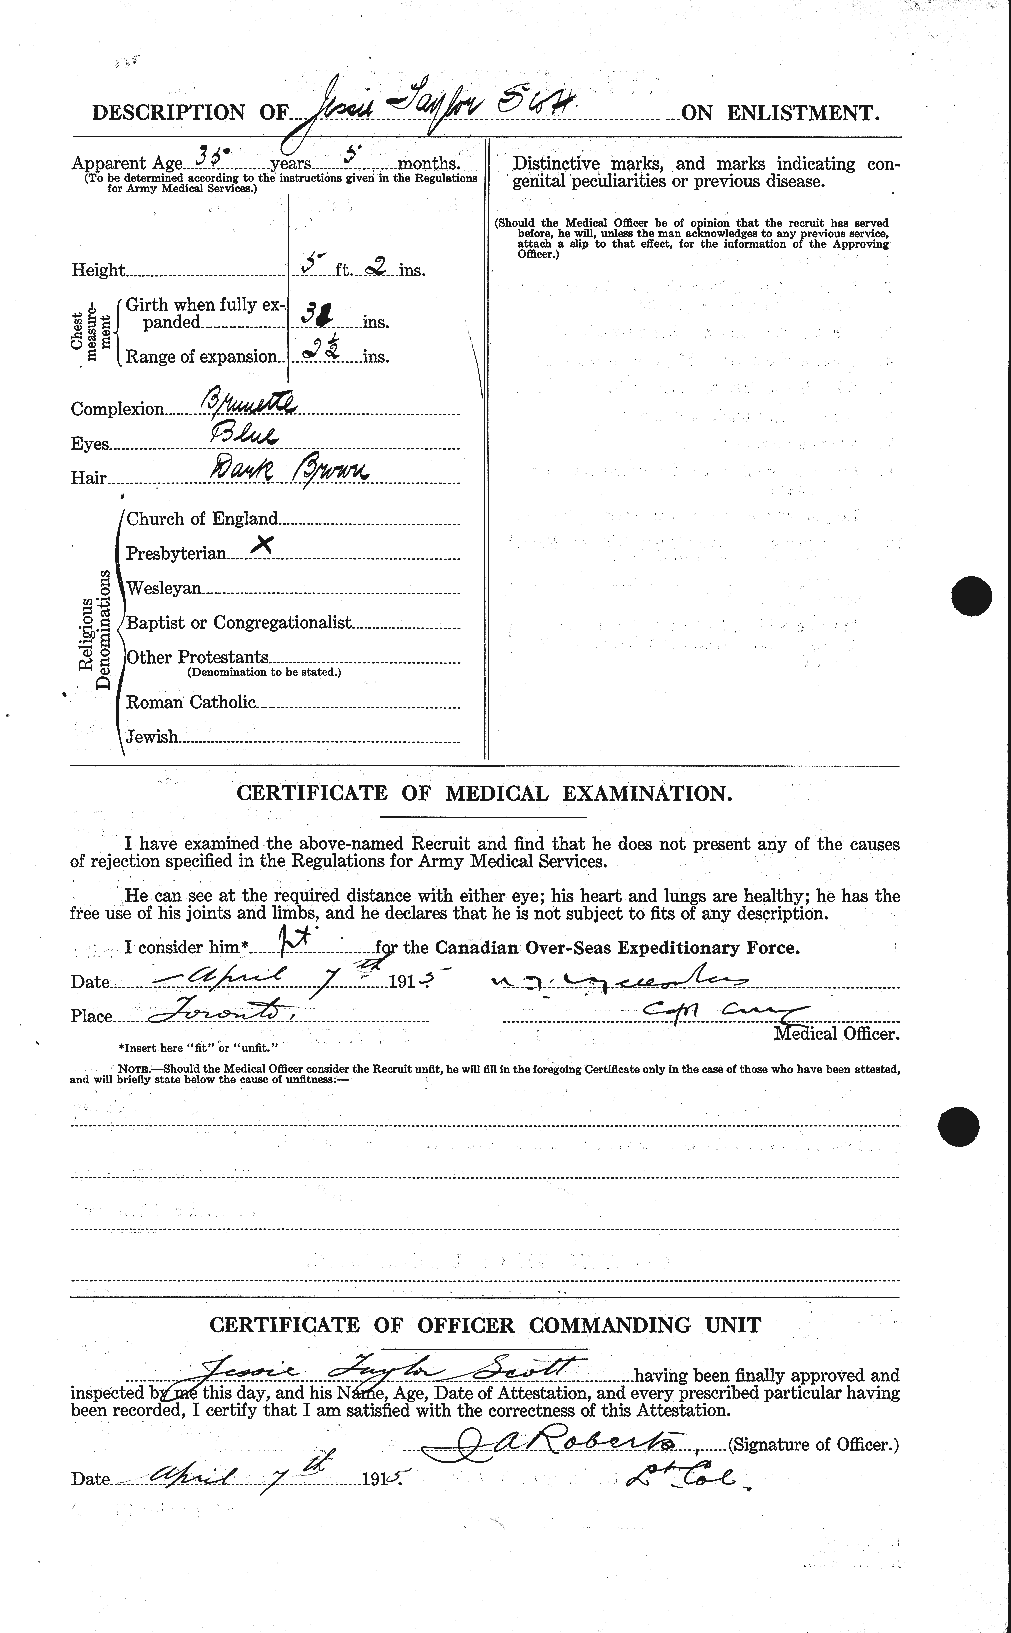 Dossiers du Personnel de la Première Guerre mondiale - CEC 085159b